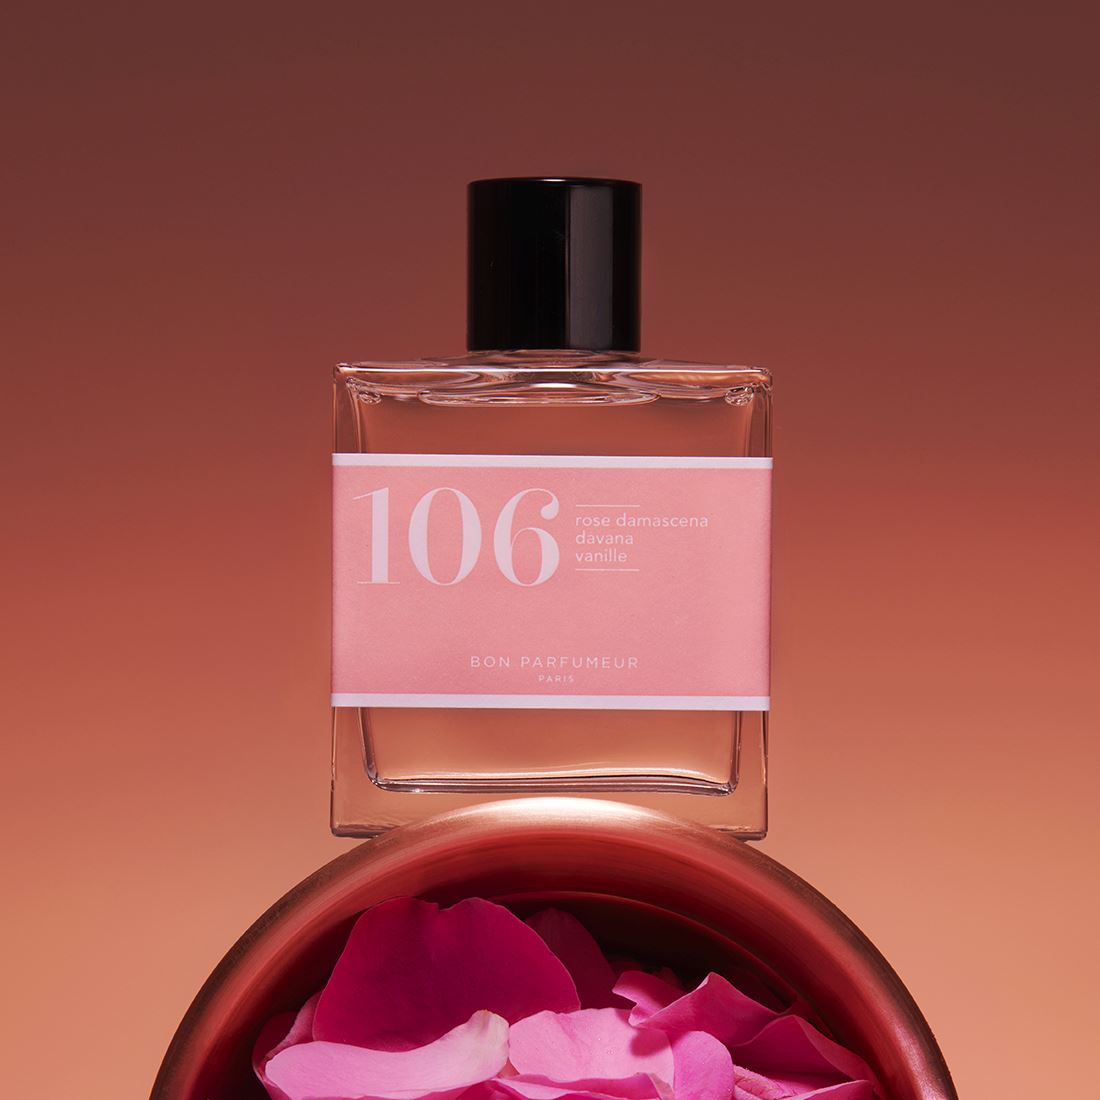 Eau de parfum 106: Damascena rose, davana, vanilla